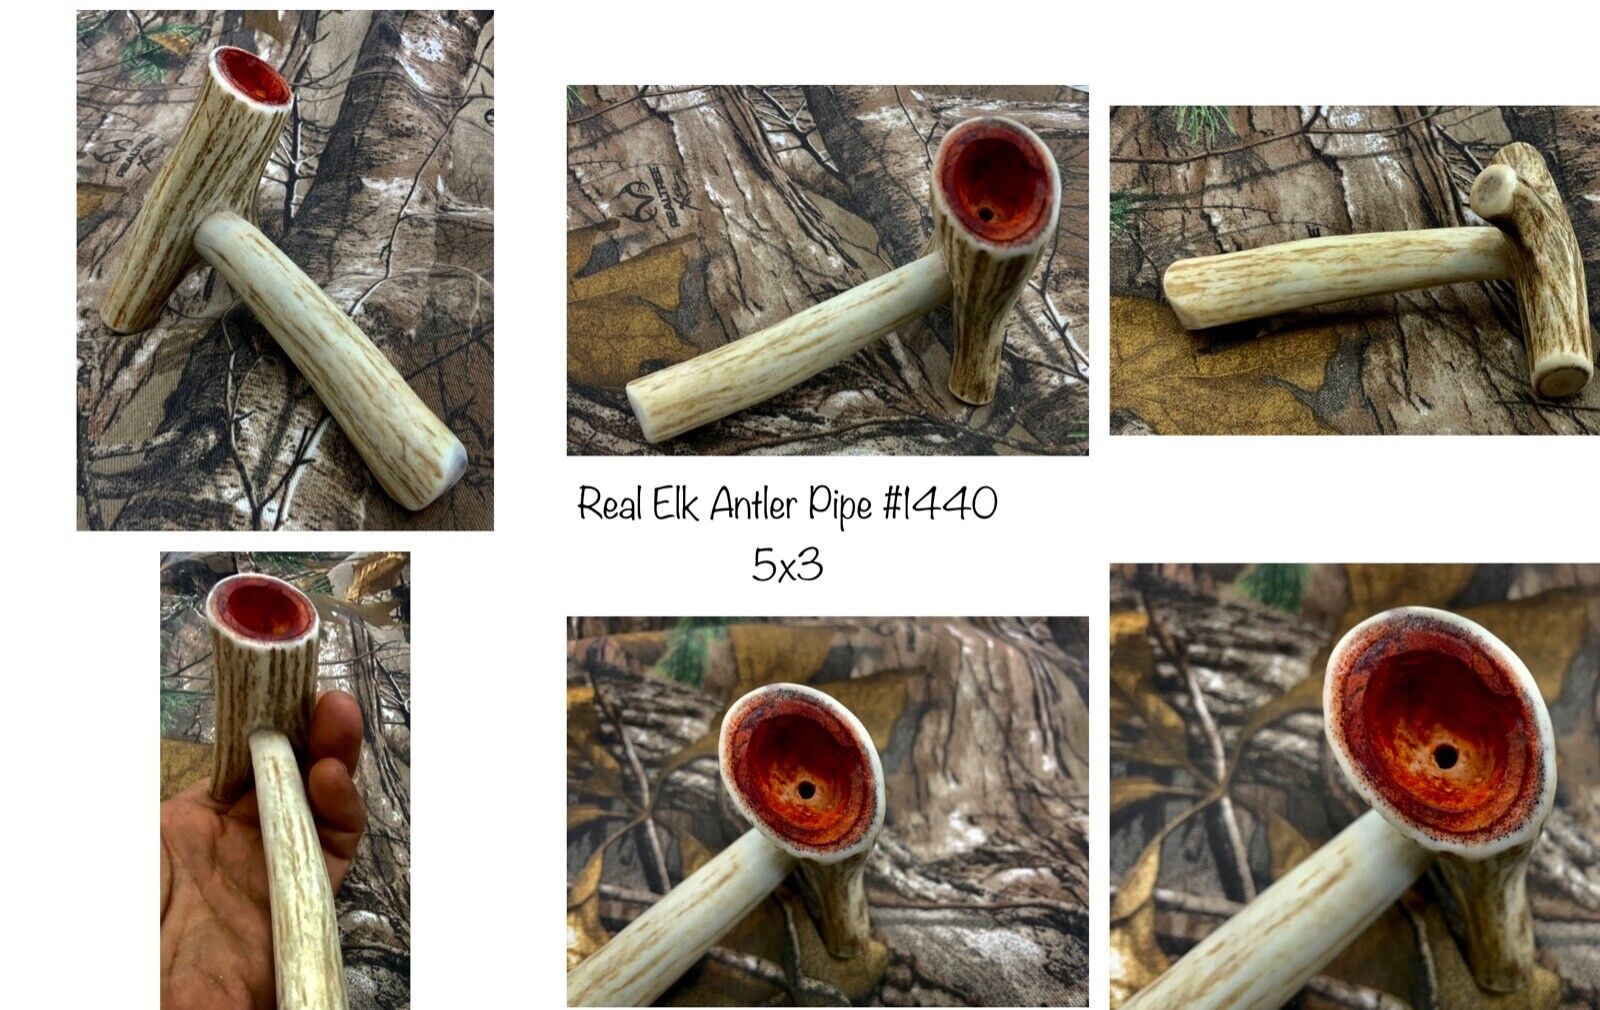 Handcrafted Real Elk Antler pipe with “Liquid Meerschaum” Bowl #1440